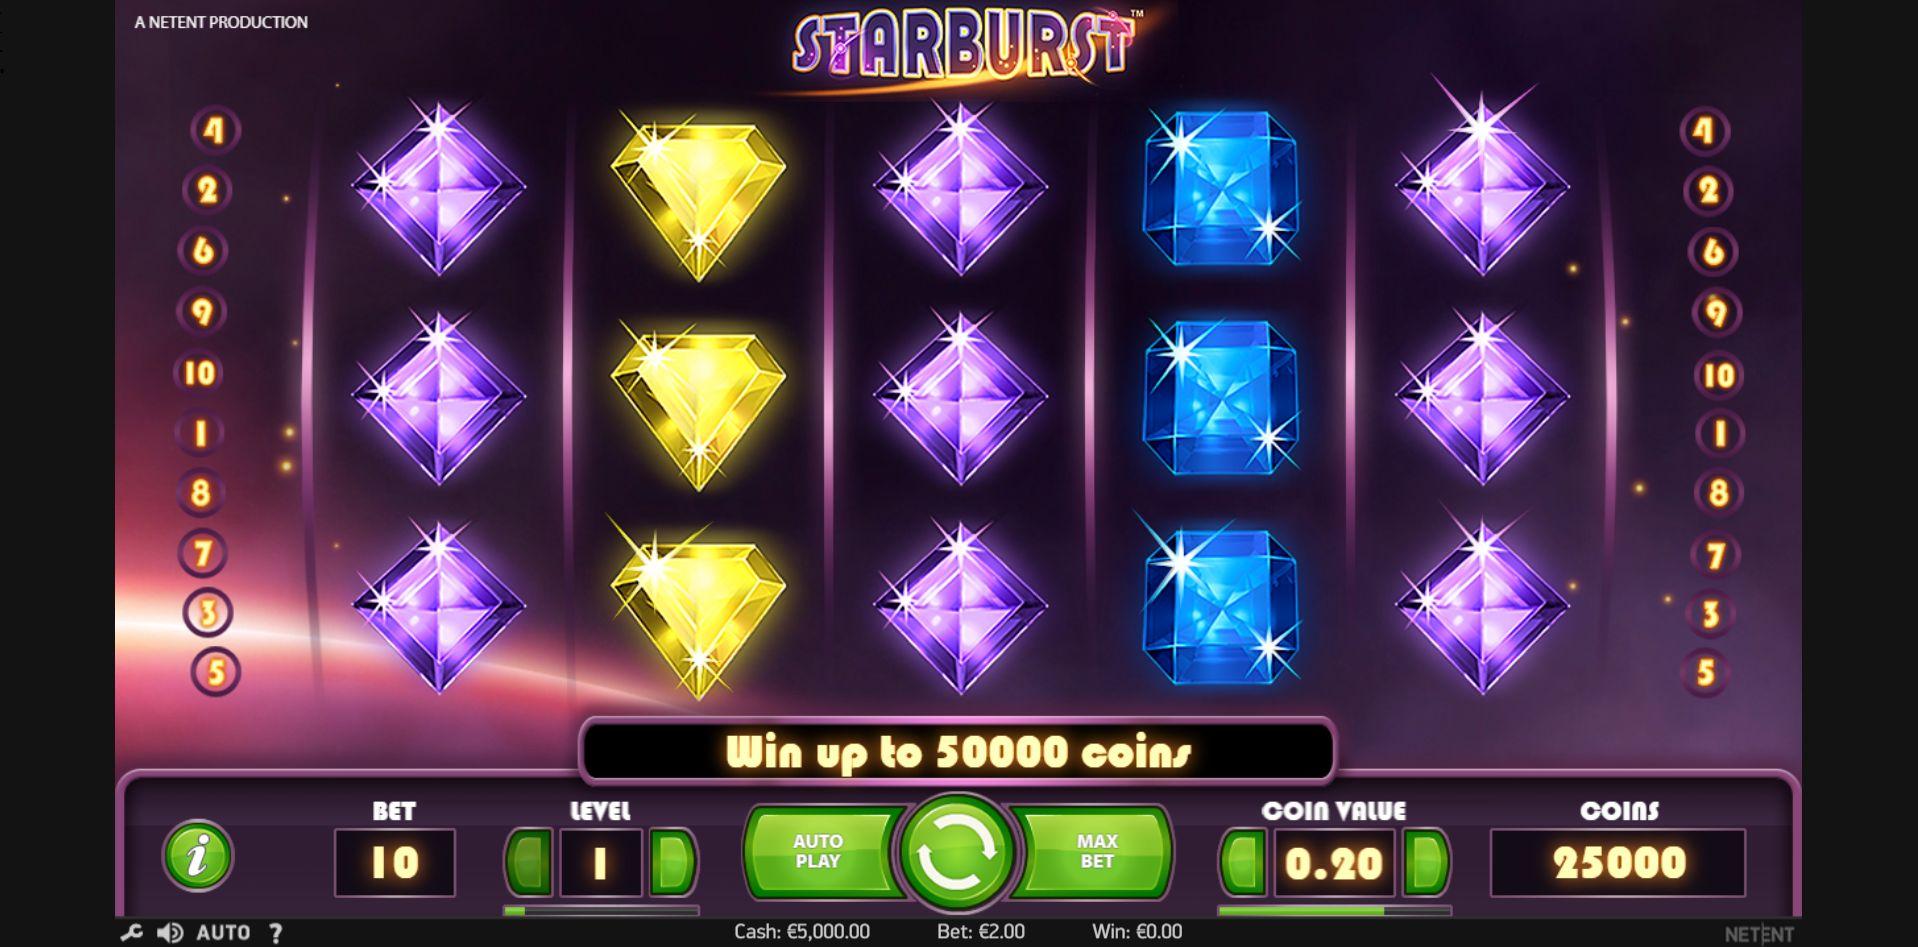 Dapatkan Keuntungan Dengan Bermain Slot Starburst